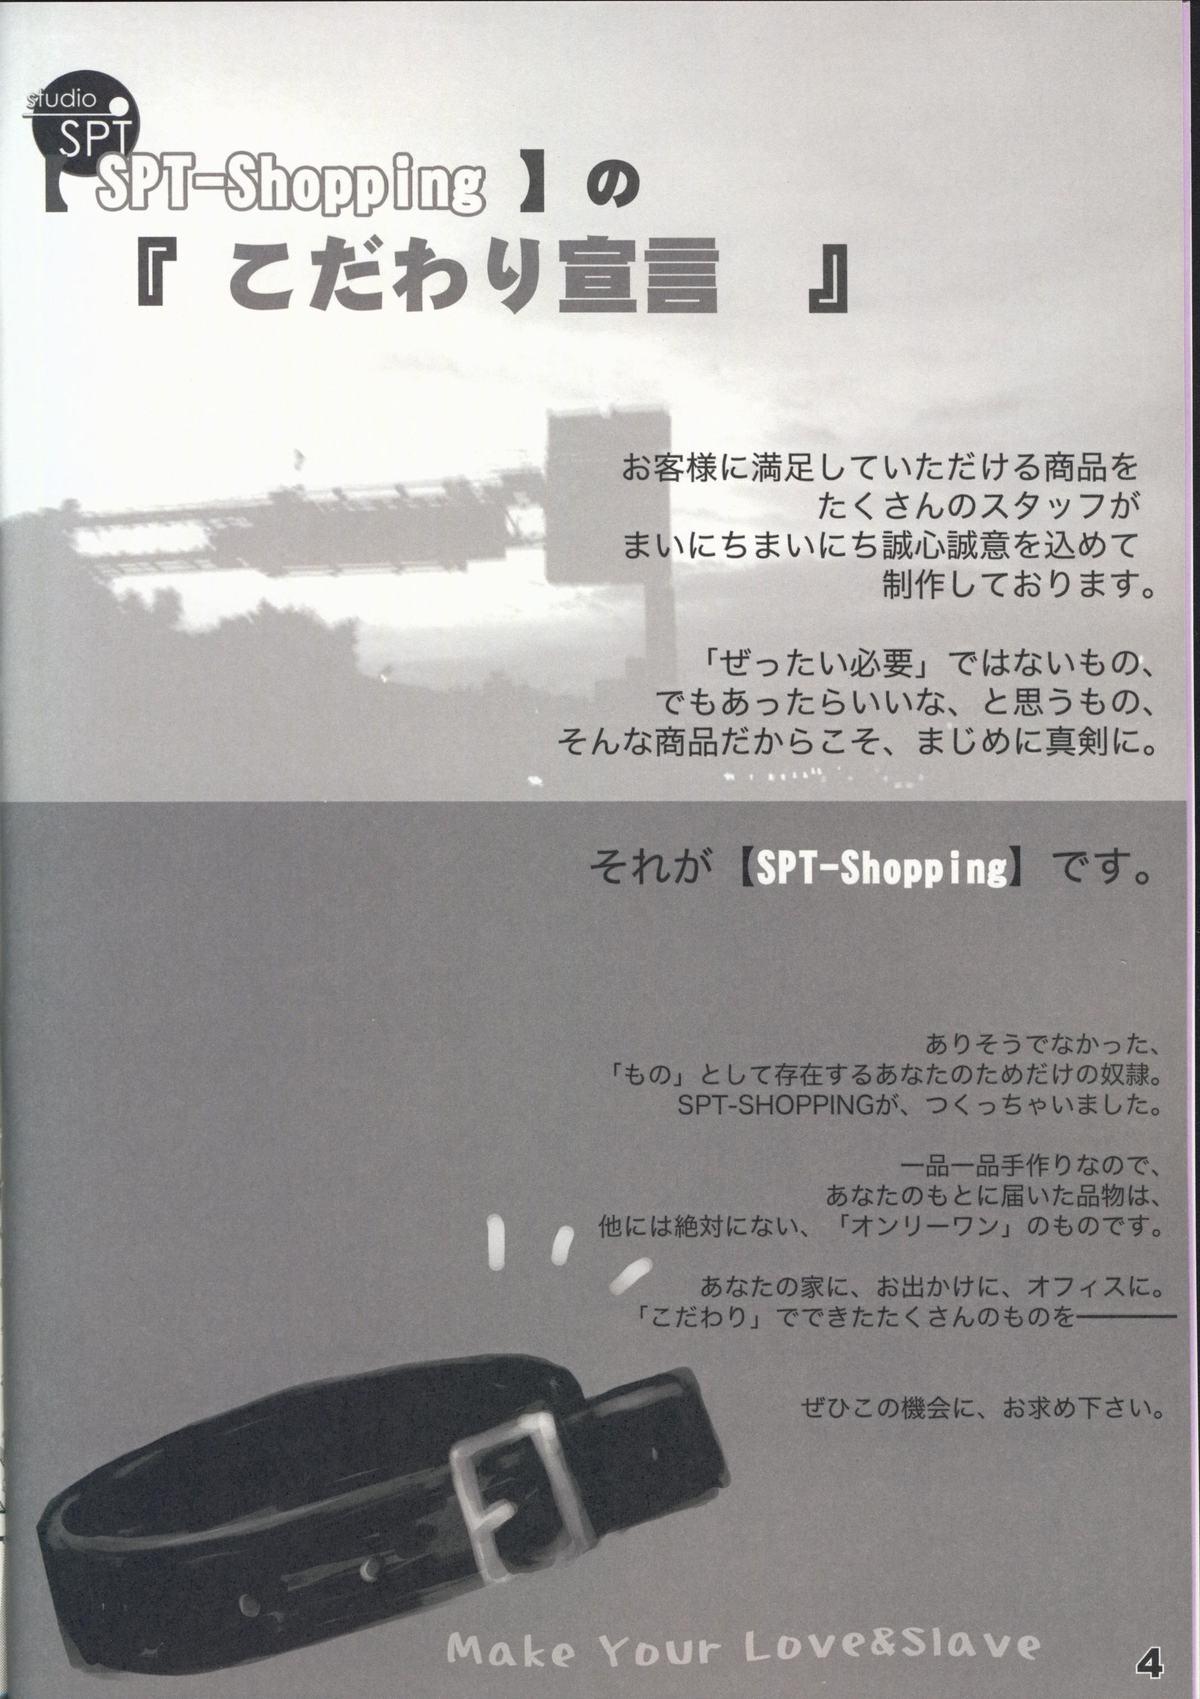 Shoujyo Tsuuhan Catalogue Vol. 2 2007 Winter Collection 5